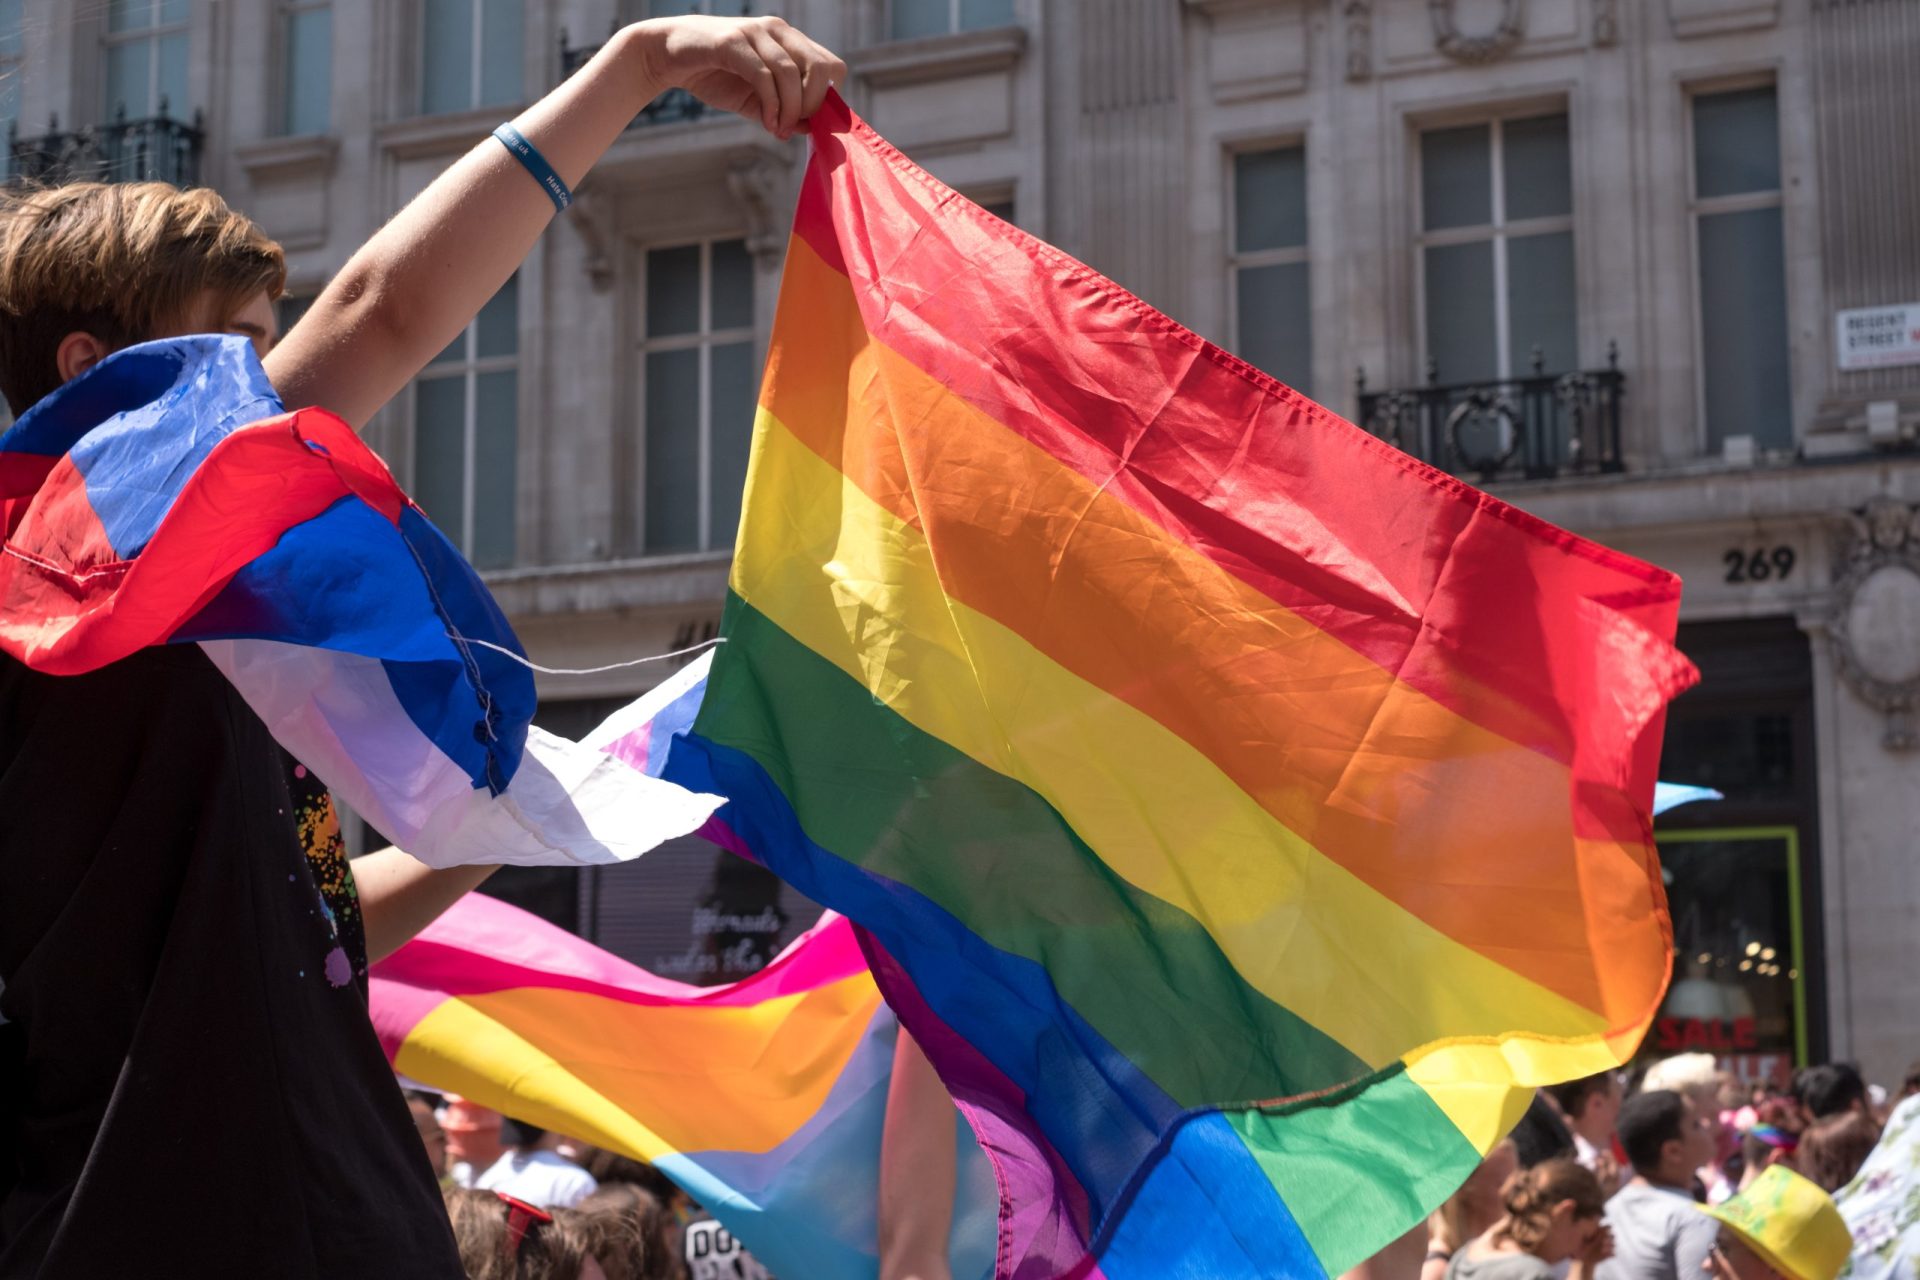 Condenações por atividade homossexual deverão ser apagadas dos registos no Reino Unido, diz ministra